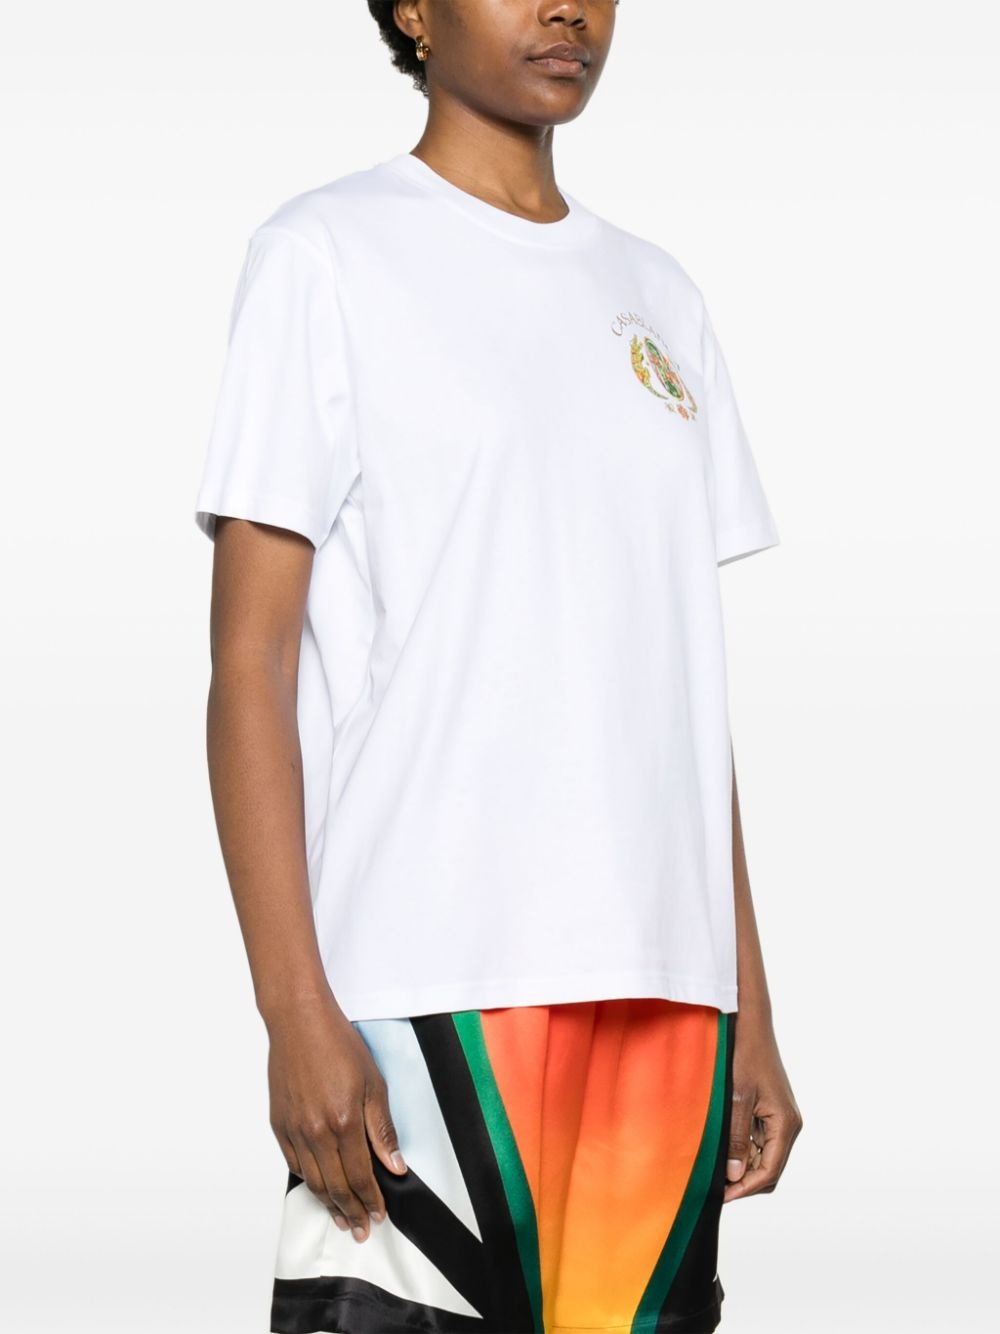 Joyaux D'Afrique Tennis Club cotton T-shirt - 3